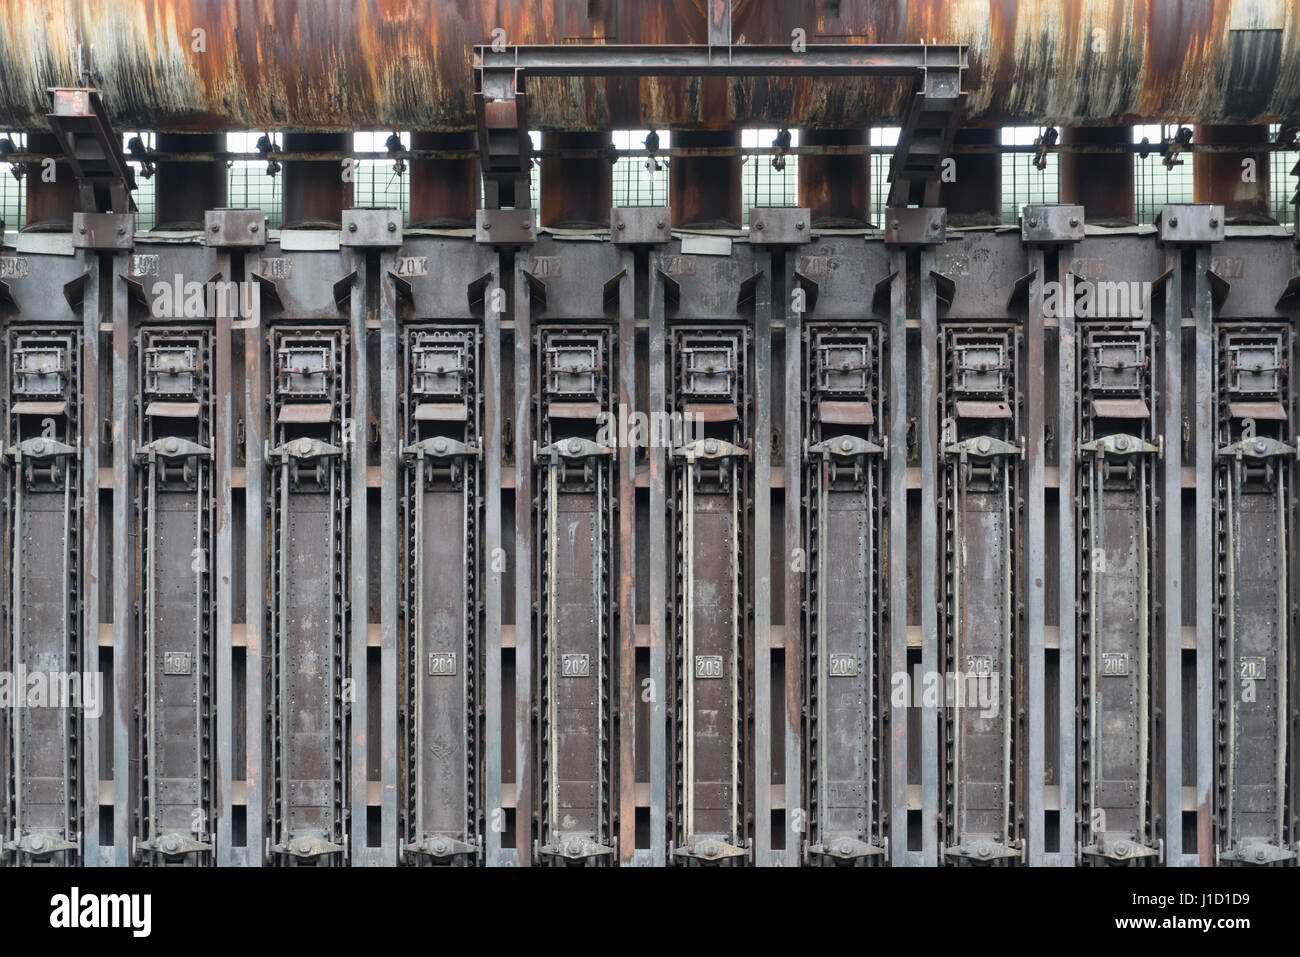 Questa batteria per forni a coke appartiene come monumento industriale al sito patrimonio dell'umanità dell'UNESCO Zollverein di Essen, Germania. Era in produzione fino al 1996 ed era il più grande impianto di coking a livello mondiale. Avete bisogno di 10,500 t di carbone per produrre i 8000 t di coke ogni giorno. Il gas del forno a coke è stato usato per riscaldare il forno stesso e per riscaldare la città di Essen. Altre parti del gas sono state utilizzate nell'industria chimica. L'impianto è iniziato negli anni 1957-1961 con 192 forni a coke. Più tardi il numero è aumentato a 304. Qui potete vedere i forni con un numero compreso tra 198 e 207. Foto Stock